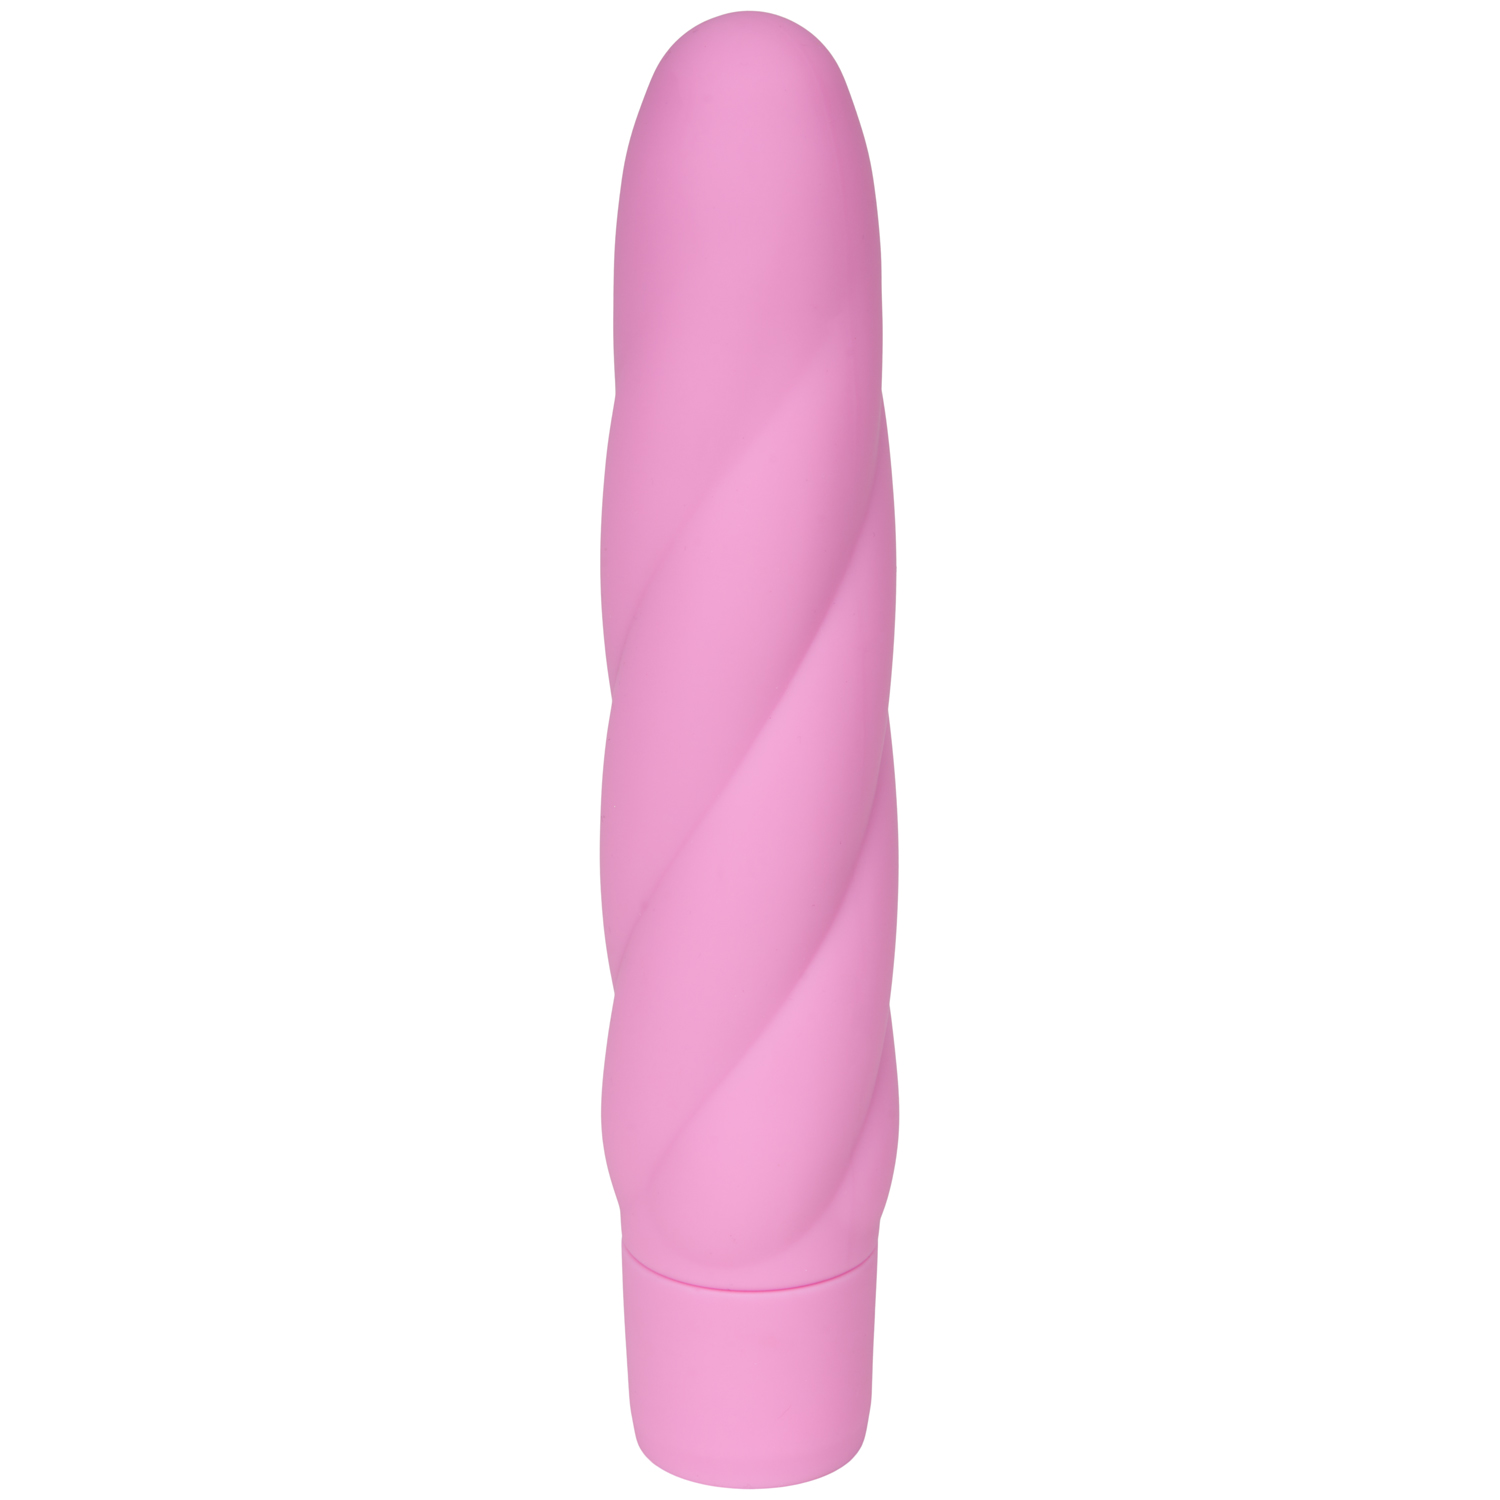 baseks Lust Dildo Vibrator - Pink thumbnail